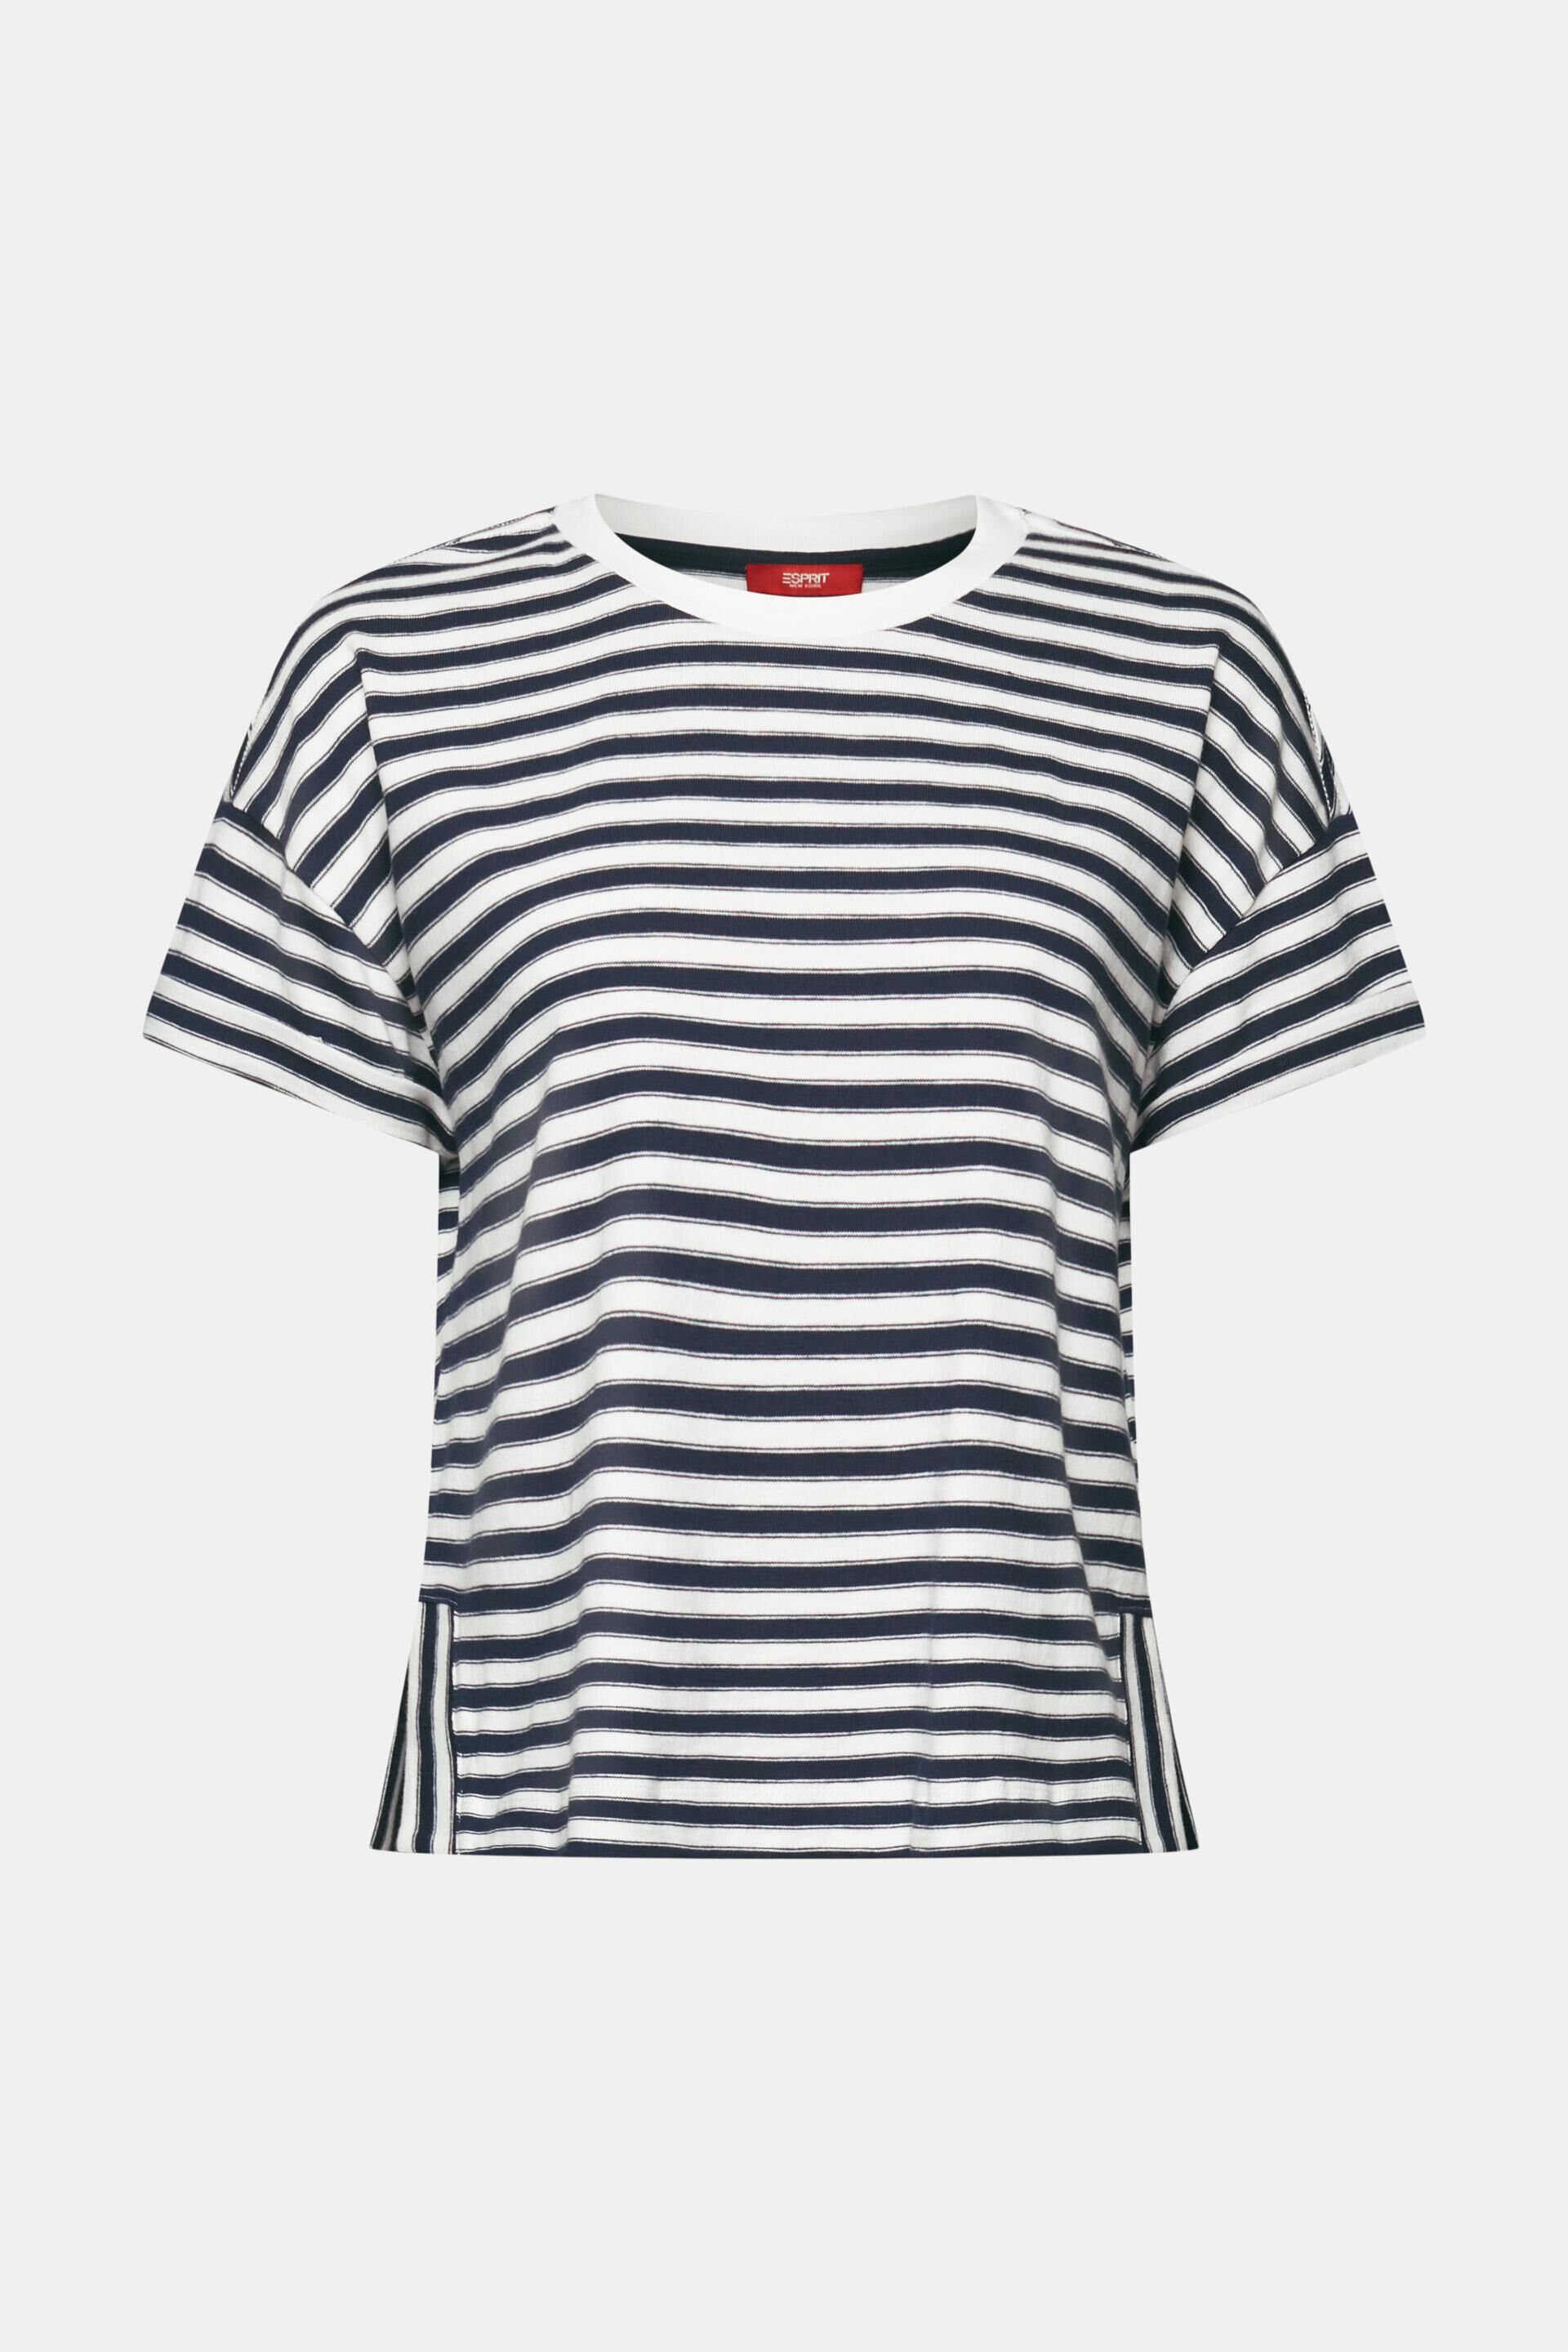 Esprit Baumwolle T-Shirt, % Gestreiftes 100